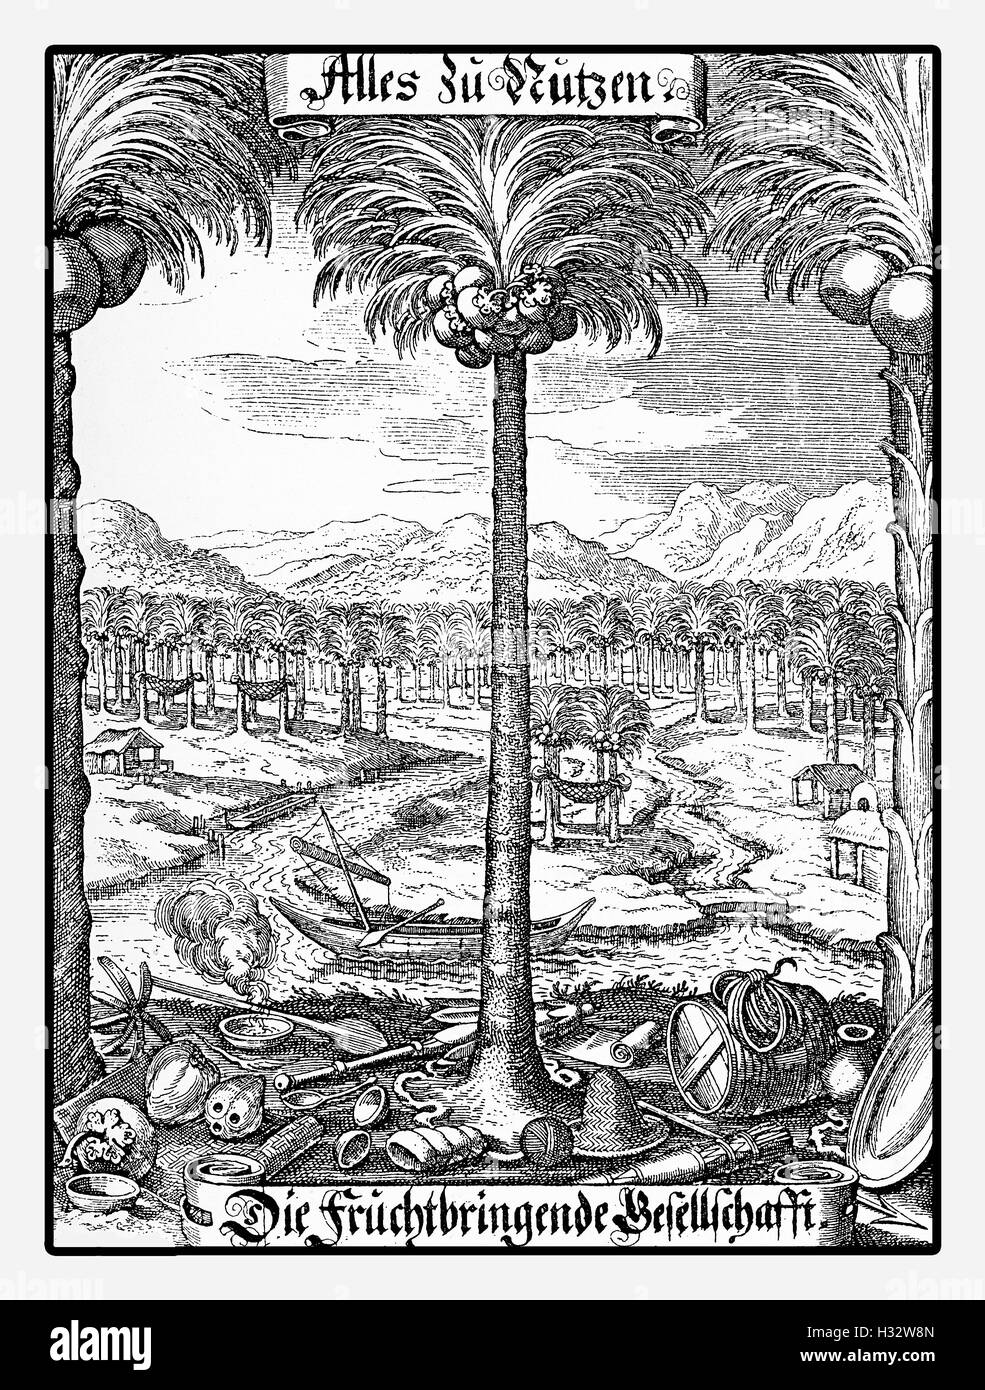 Année 1646, document publicitaire de fruits company, gravure d'époque Banque D'Images